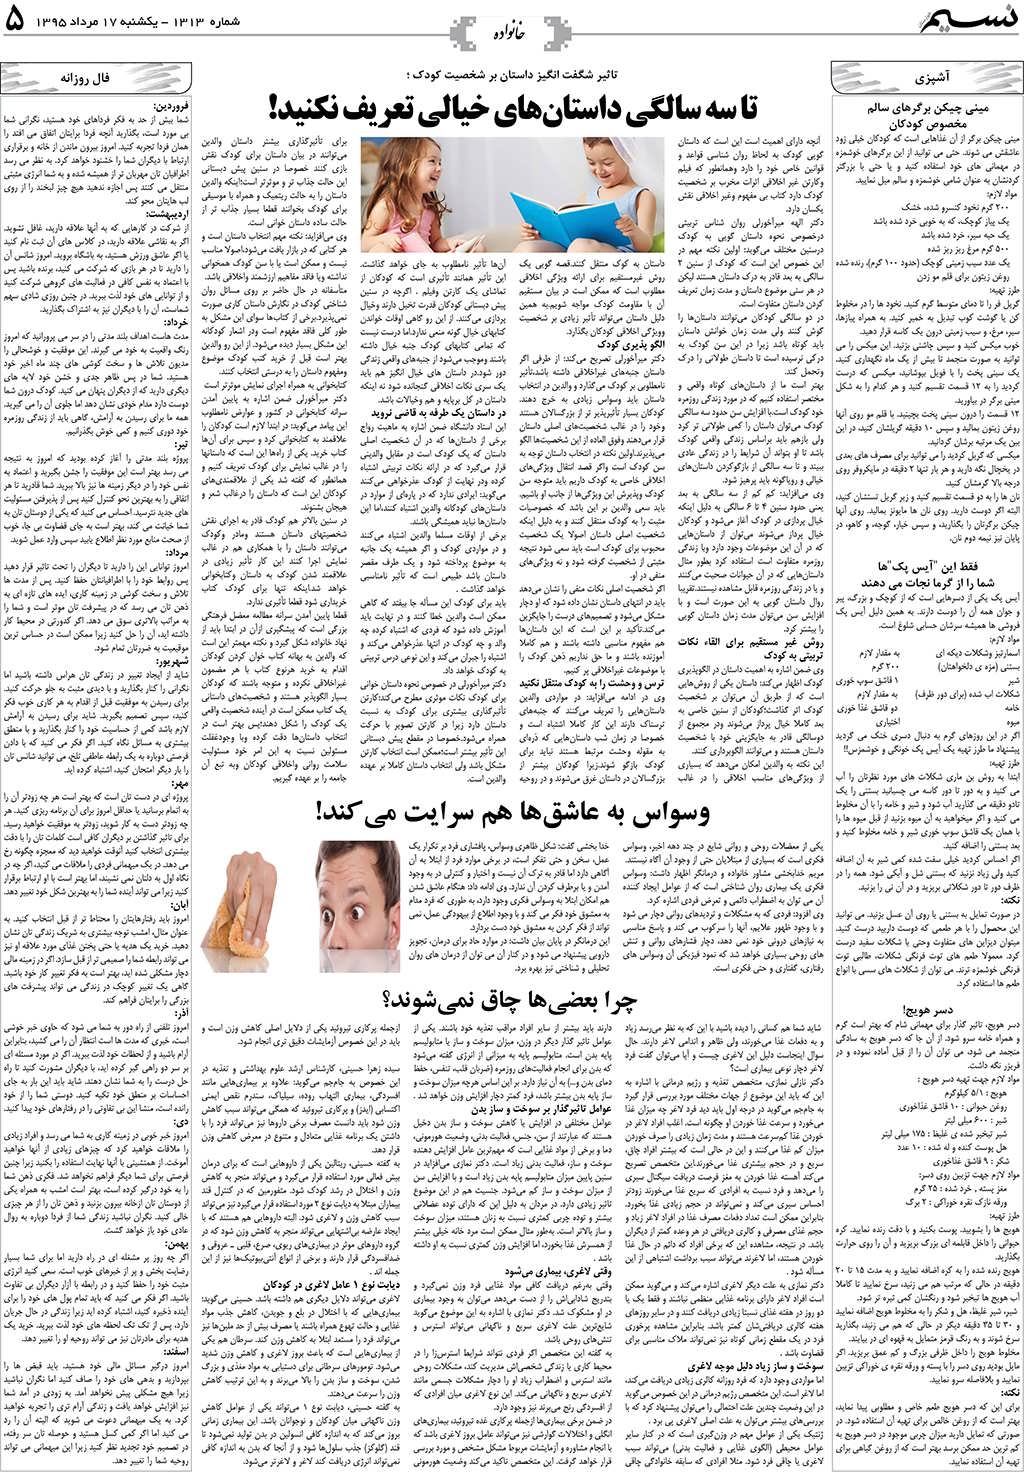 صفحه خانواده روزنامه نسیم شماره 1313